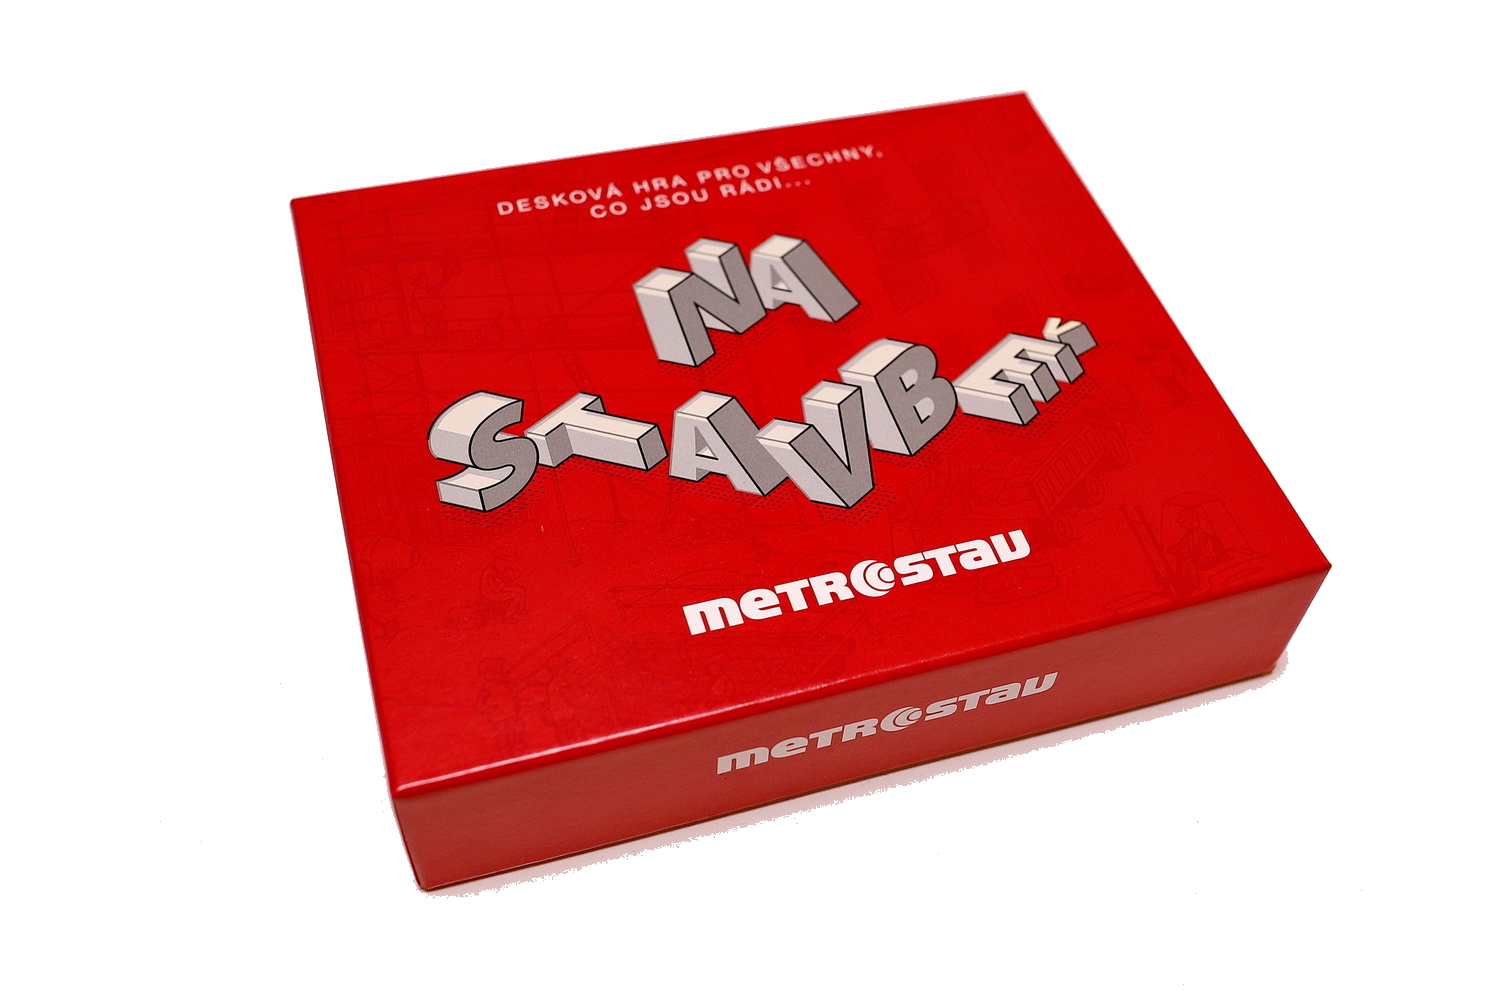 Hra desková na stavbě Metrostav 